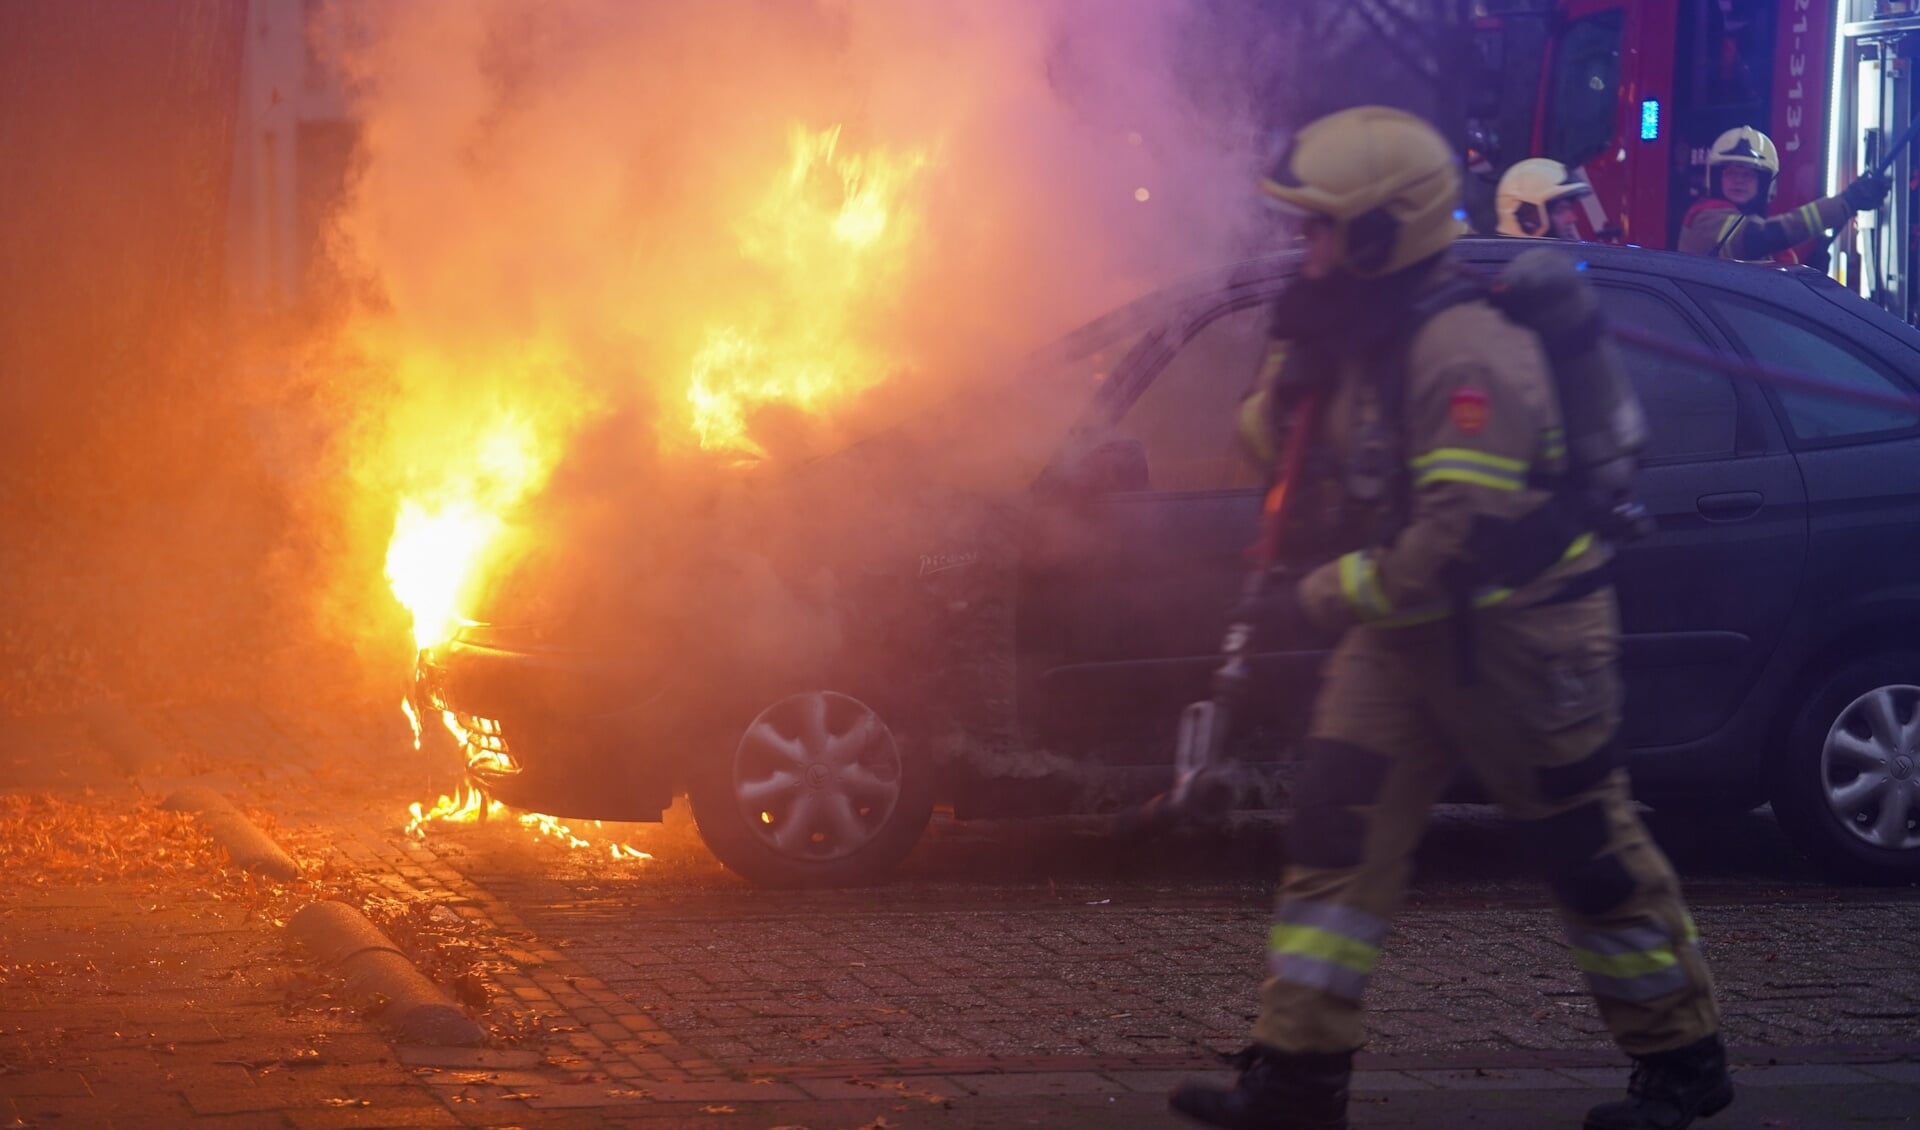 Autobrand in de Zwaluwstraat. (Foto: Gabor Heeres, Foto Mallo)